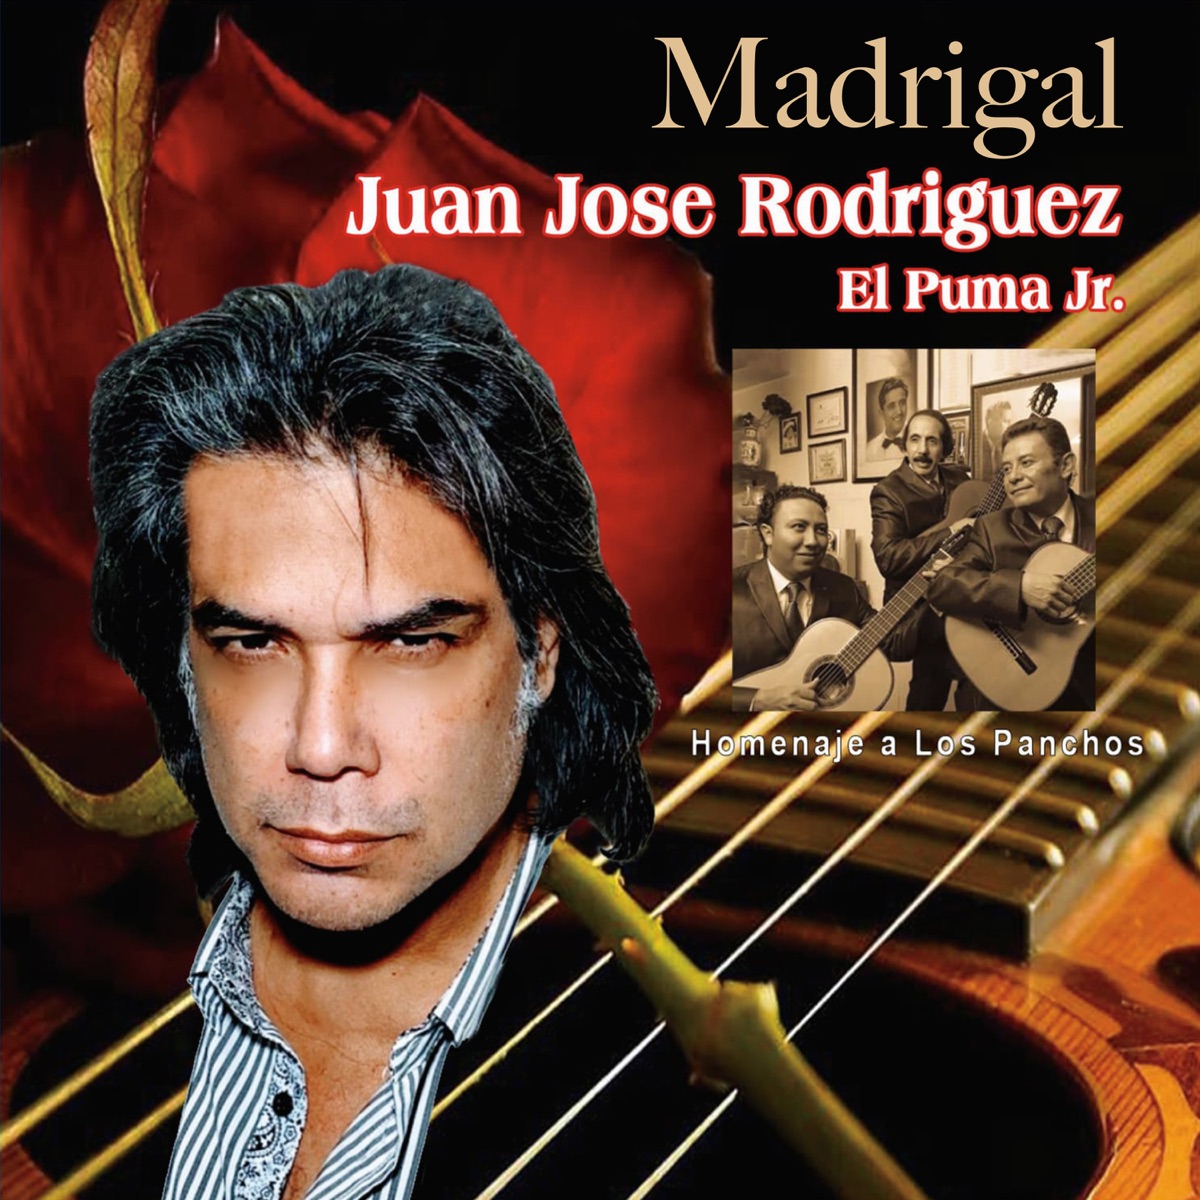 ‎Madrigal (Homenaje a los Panchos) - Single de Juan Jose Rodriguez el Puma  Jr en Apple Music